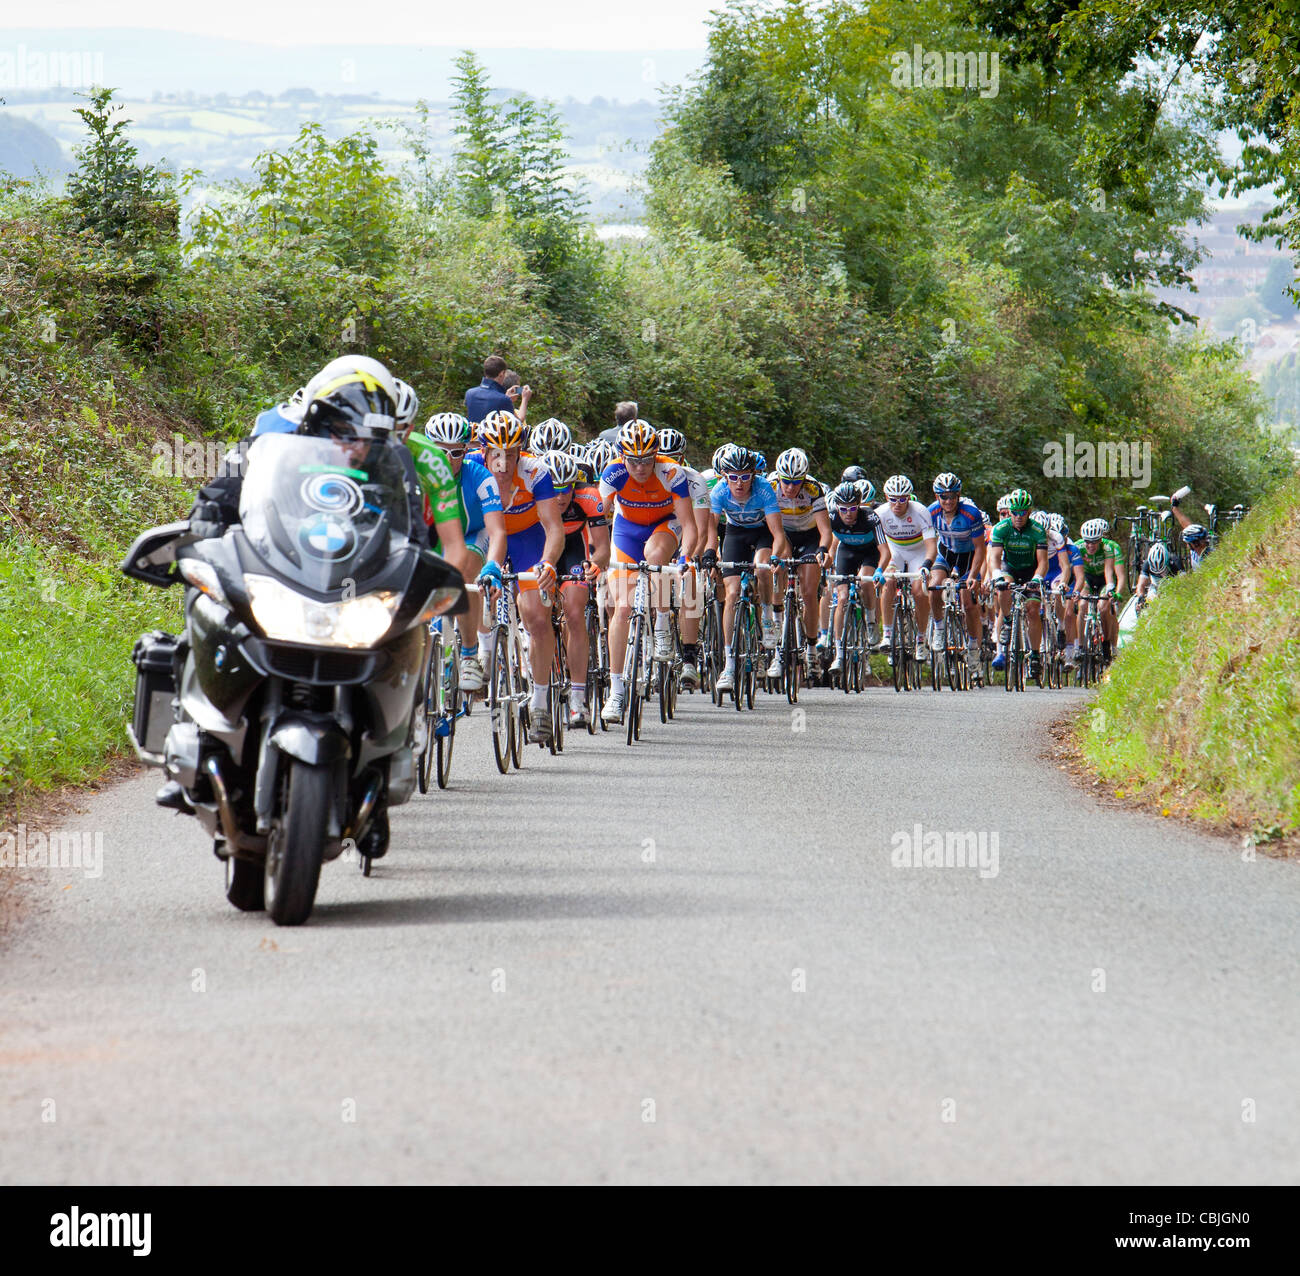 Peleton du Tour de Bretagne cycliste dans le Devon, Angleterre Banque D'Images